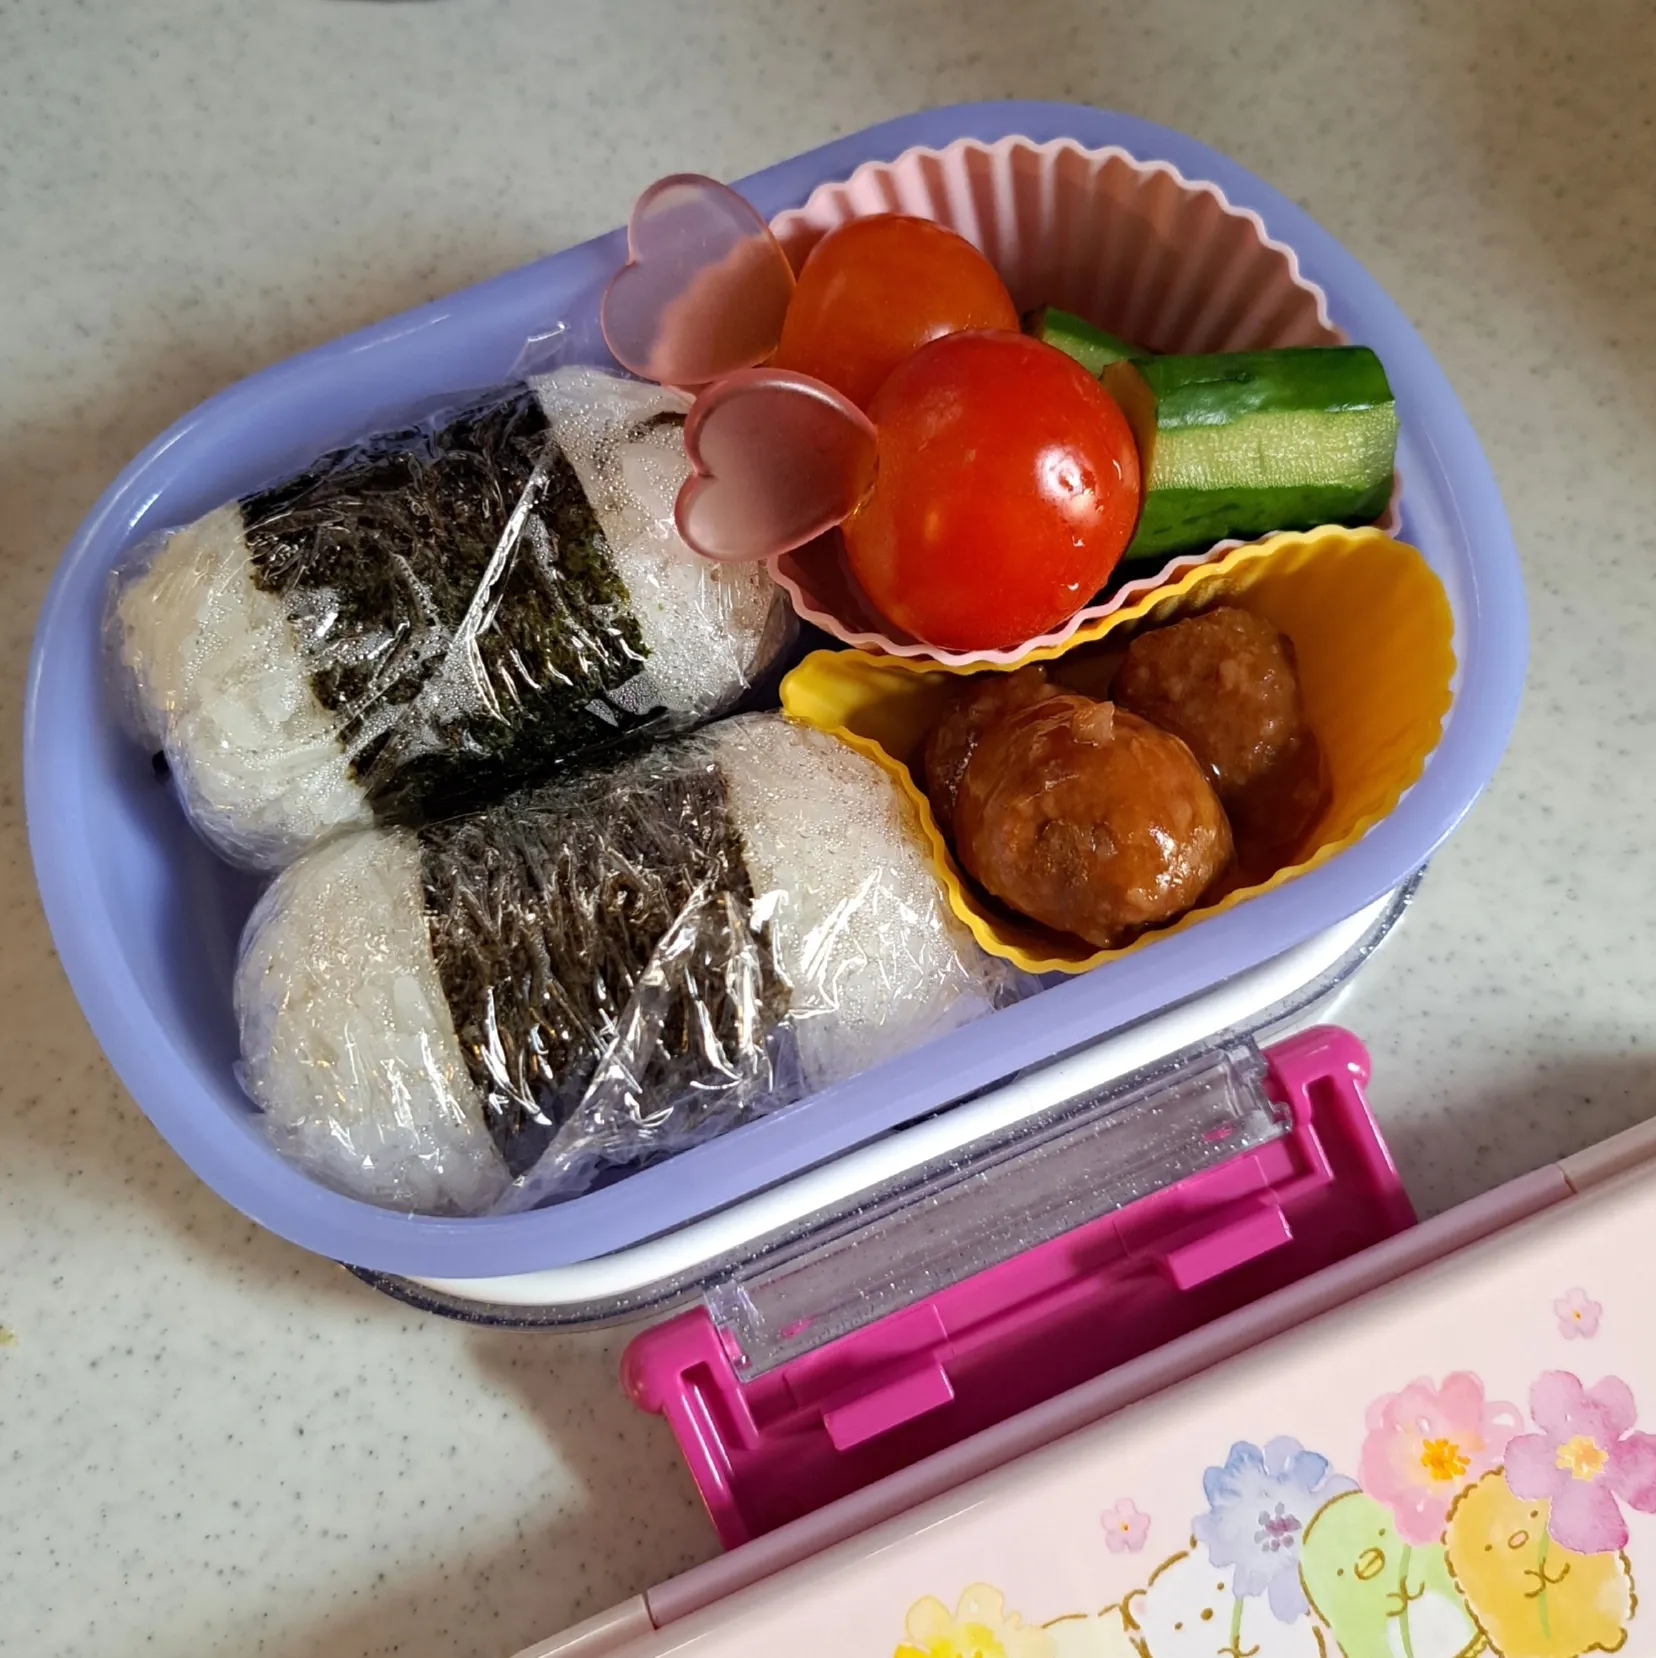 My Neighbor Totoro Bento Lunch Box, Daisies